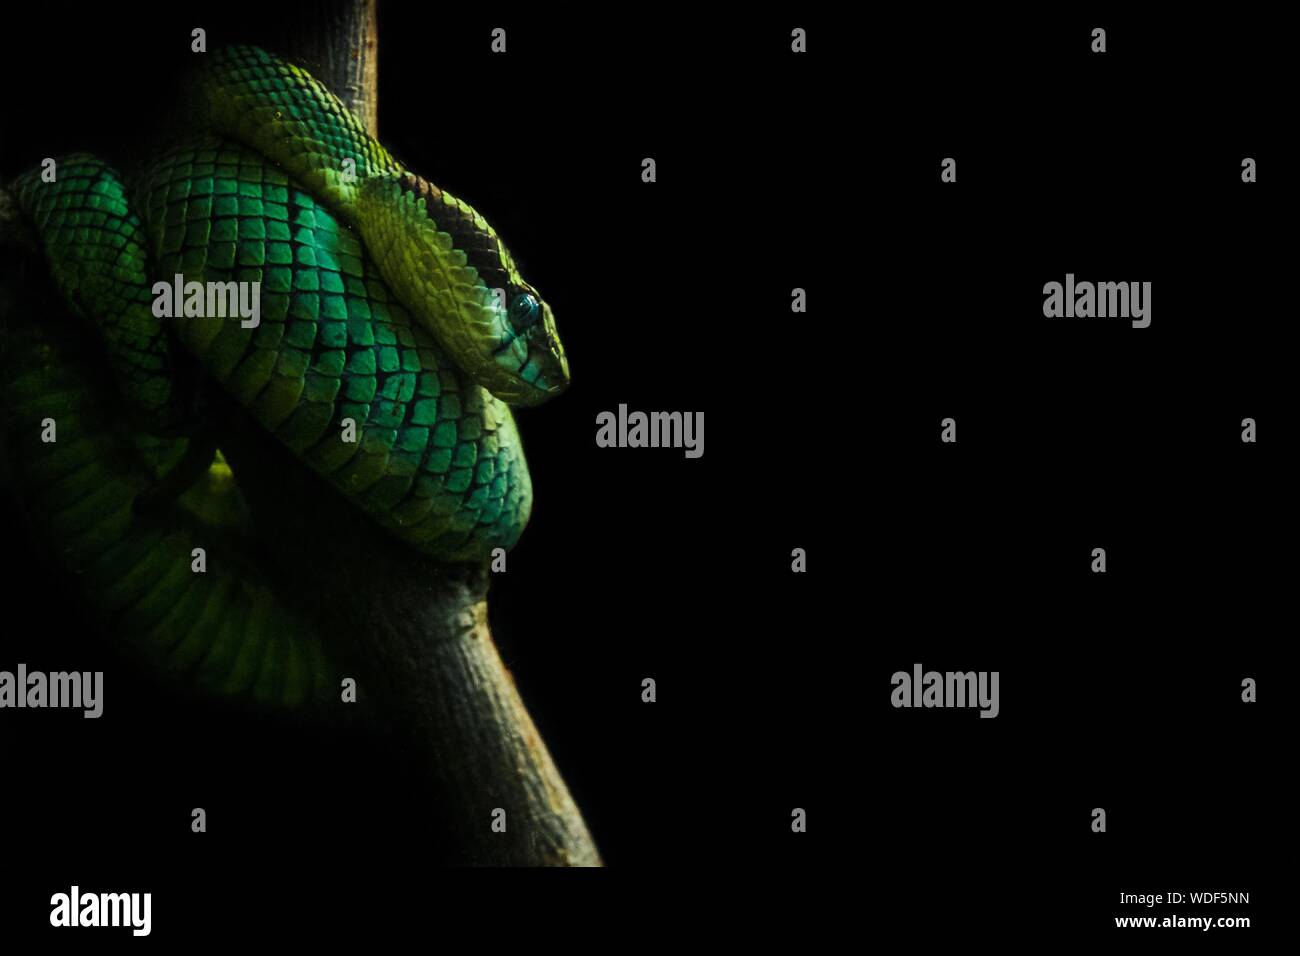 Close-up of Green Snake sur Branch sur fond noir Banque D'Images